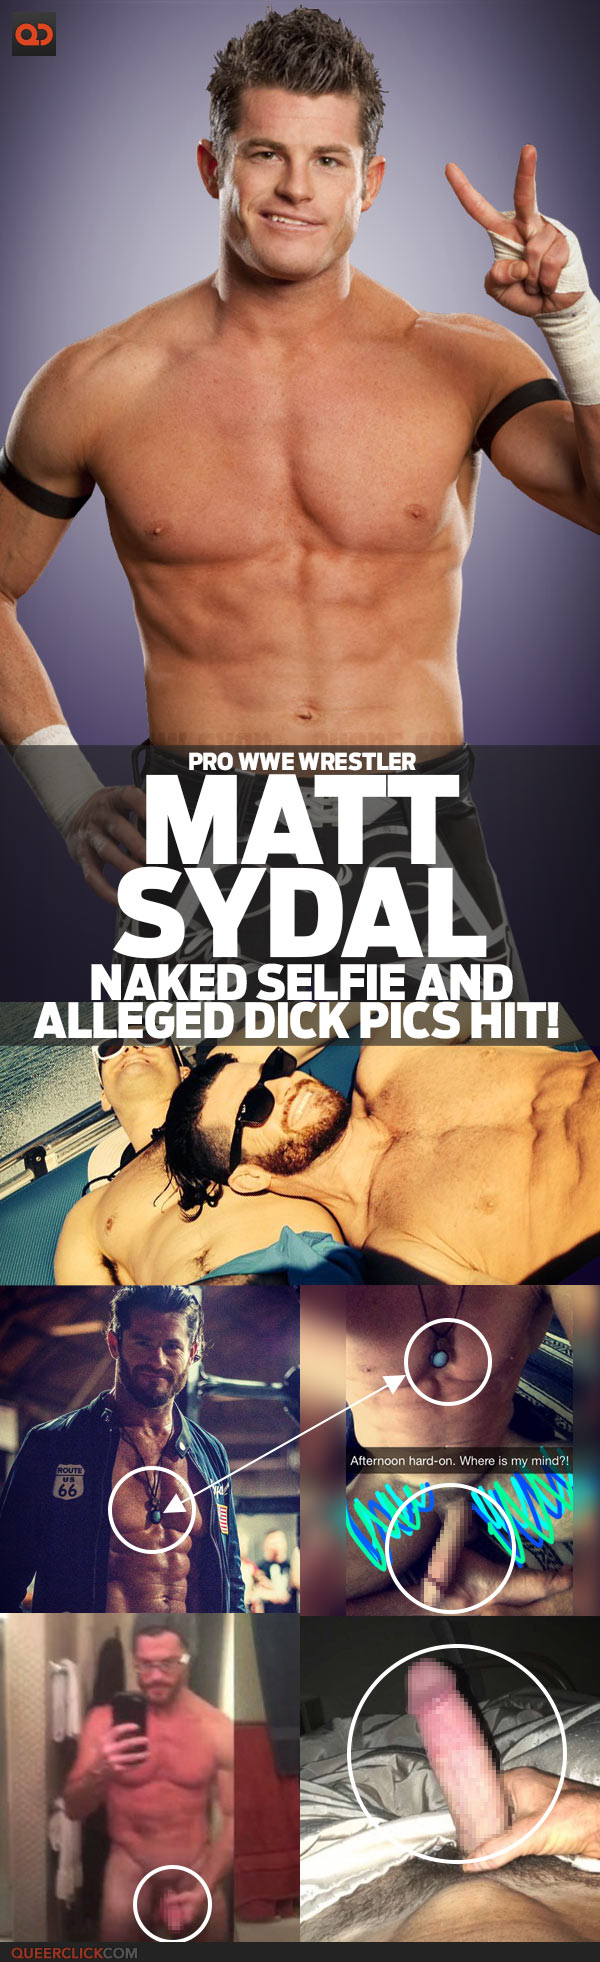 Wwe male wrestlers nude